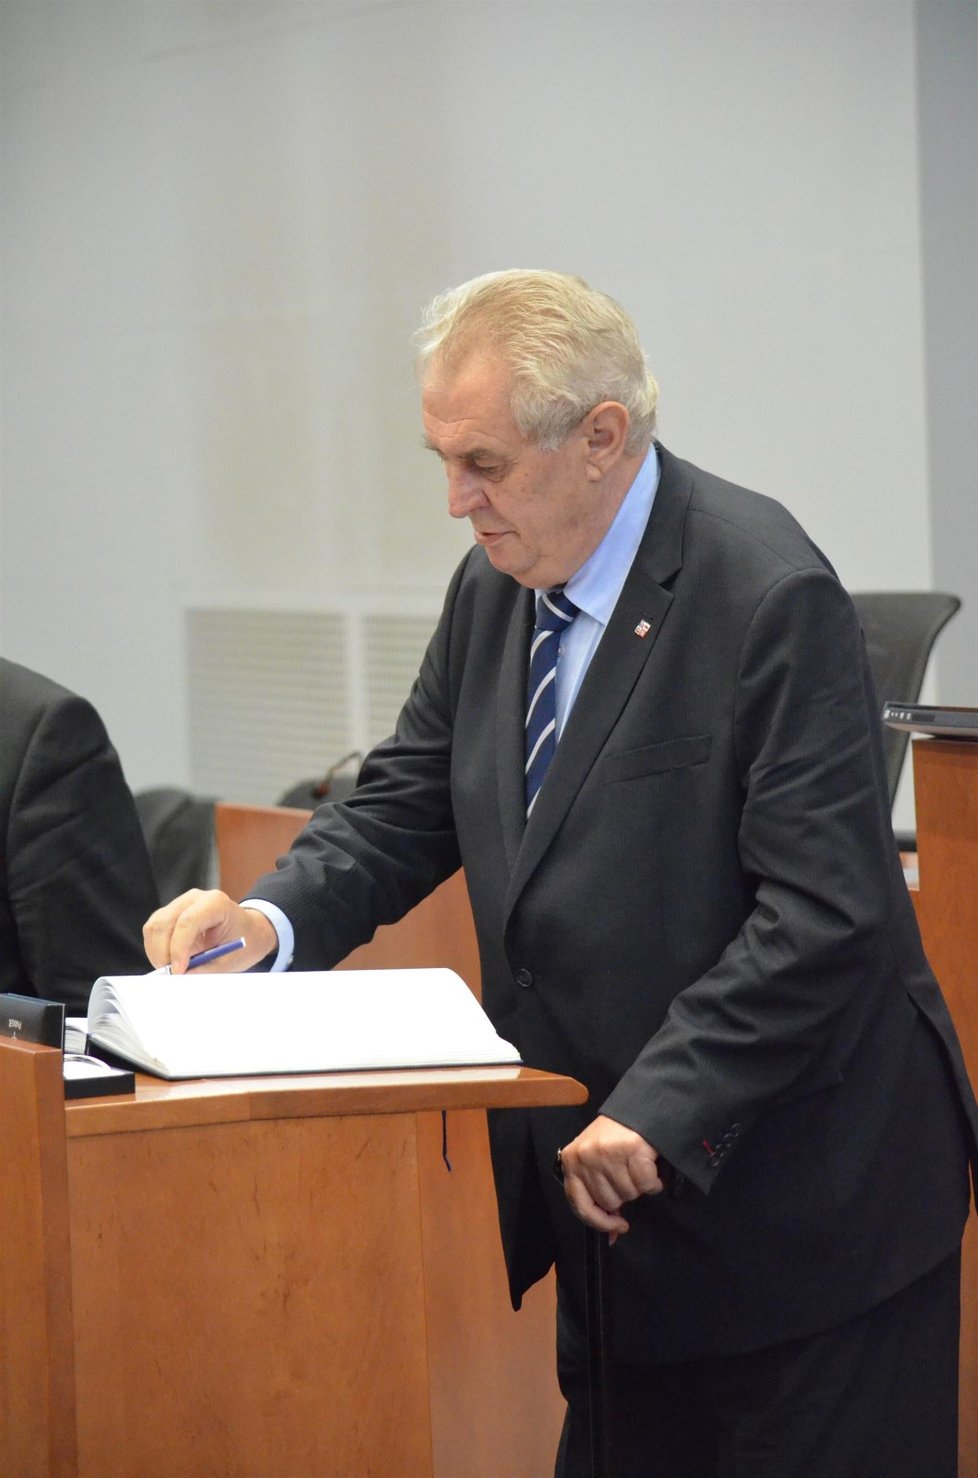 „Tužku vracím,“ utahuje si prezident Miloš Zeman v krajích ze svého předchůdce Václava Klause, který si vzal v roce 2011 v Chile protokolární pero